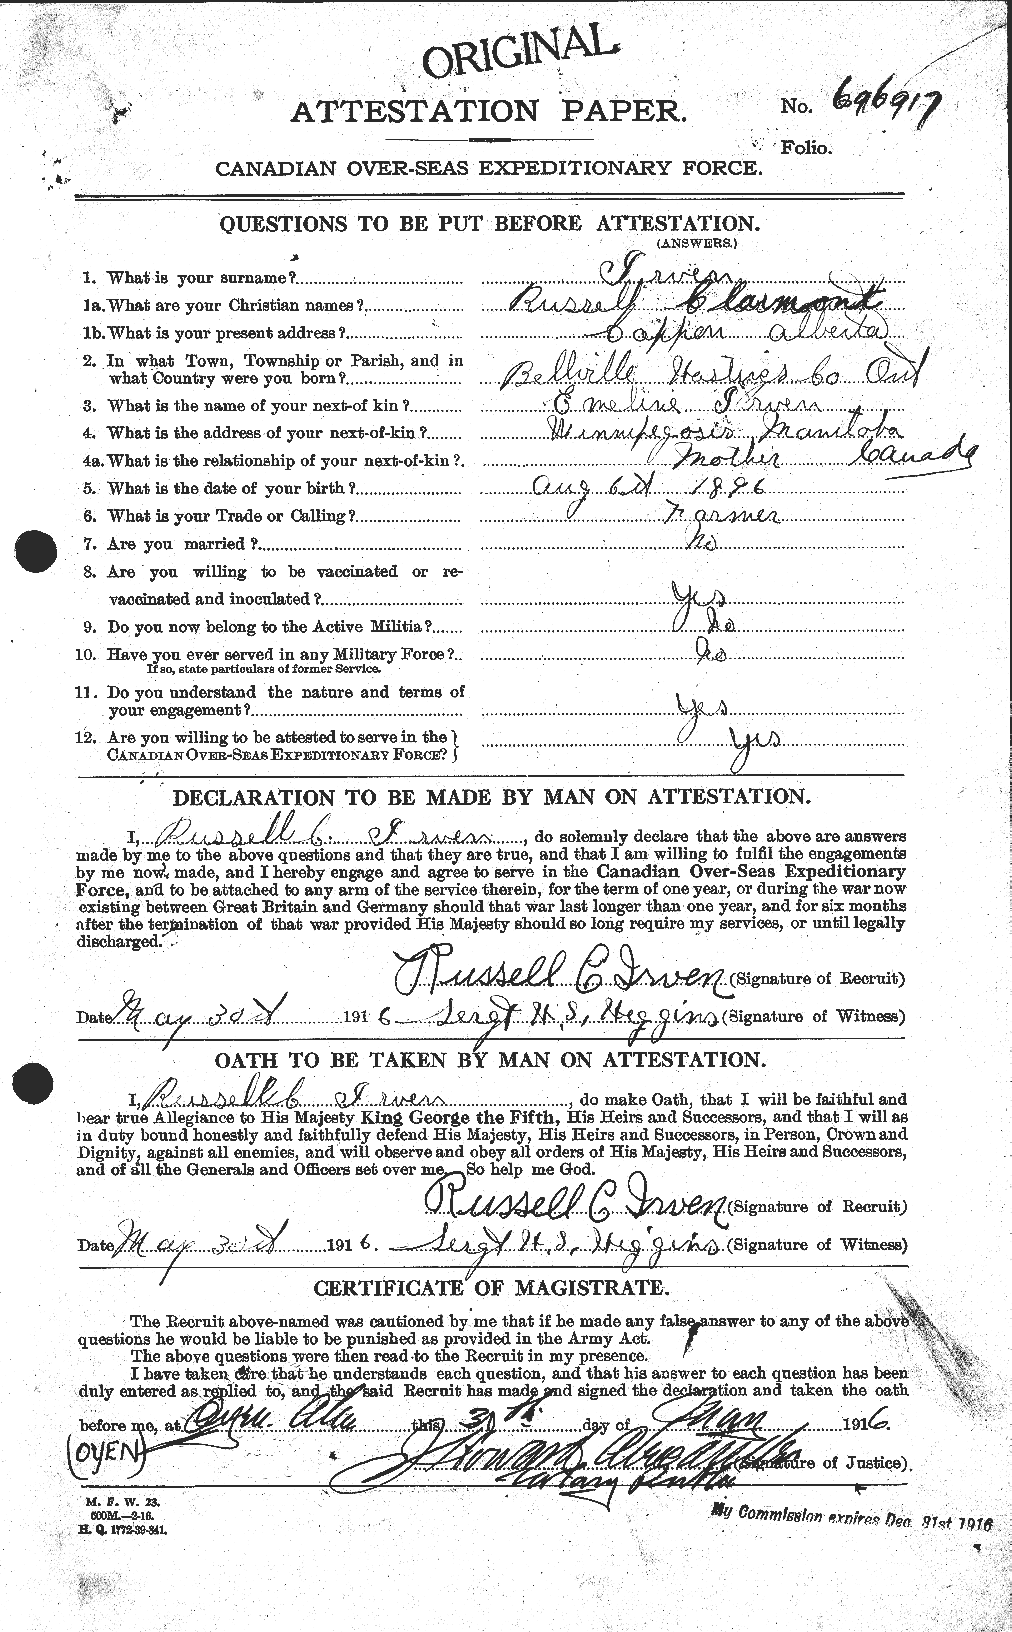 Dossiers du Personnel de la Première Guerre mondiale - CEC 417168a